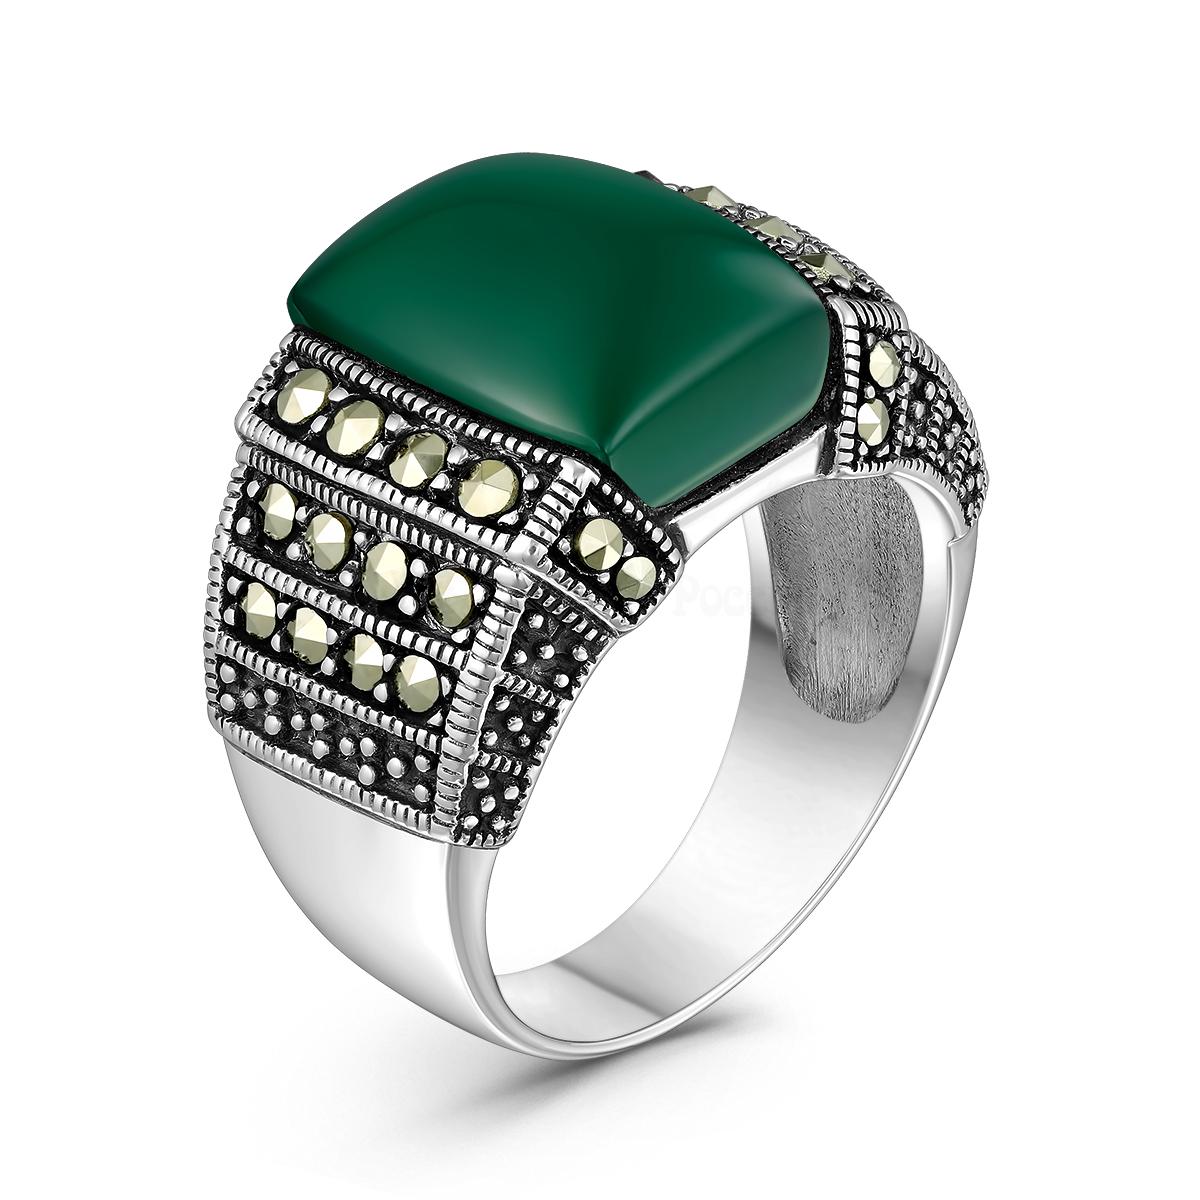 Кольцо роскошное женское из чернёного серебра с натуральным зелёным агатом и марказитами HR-876а